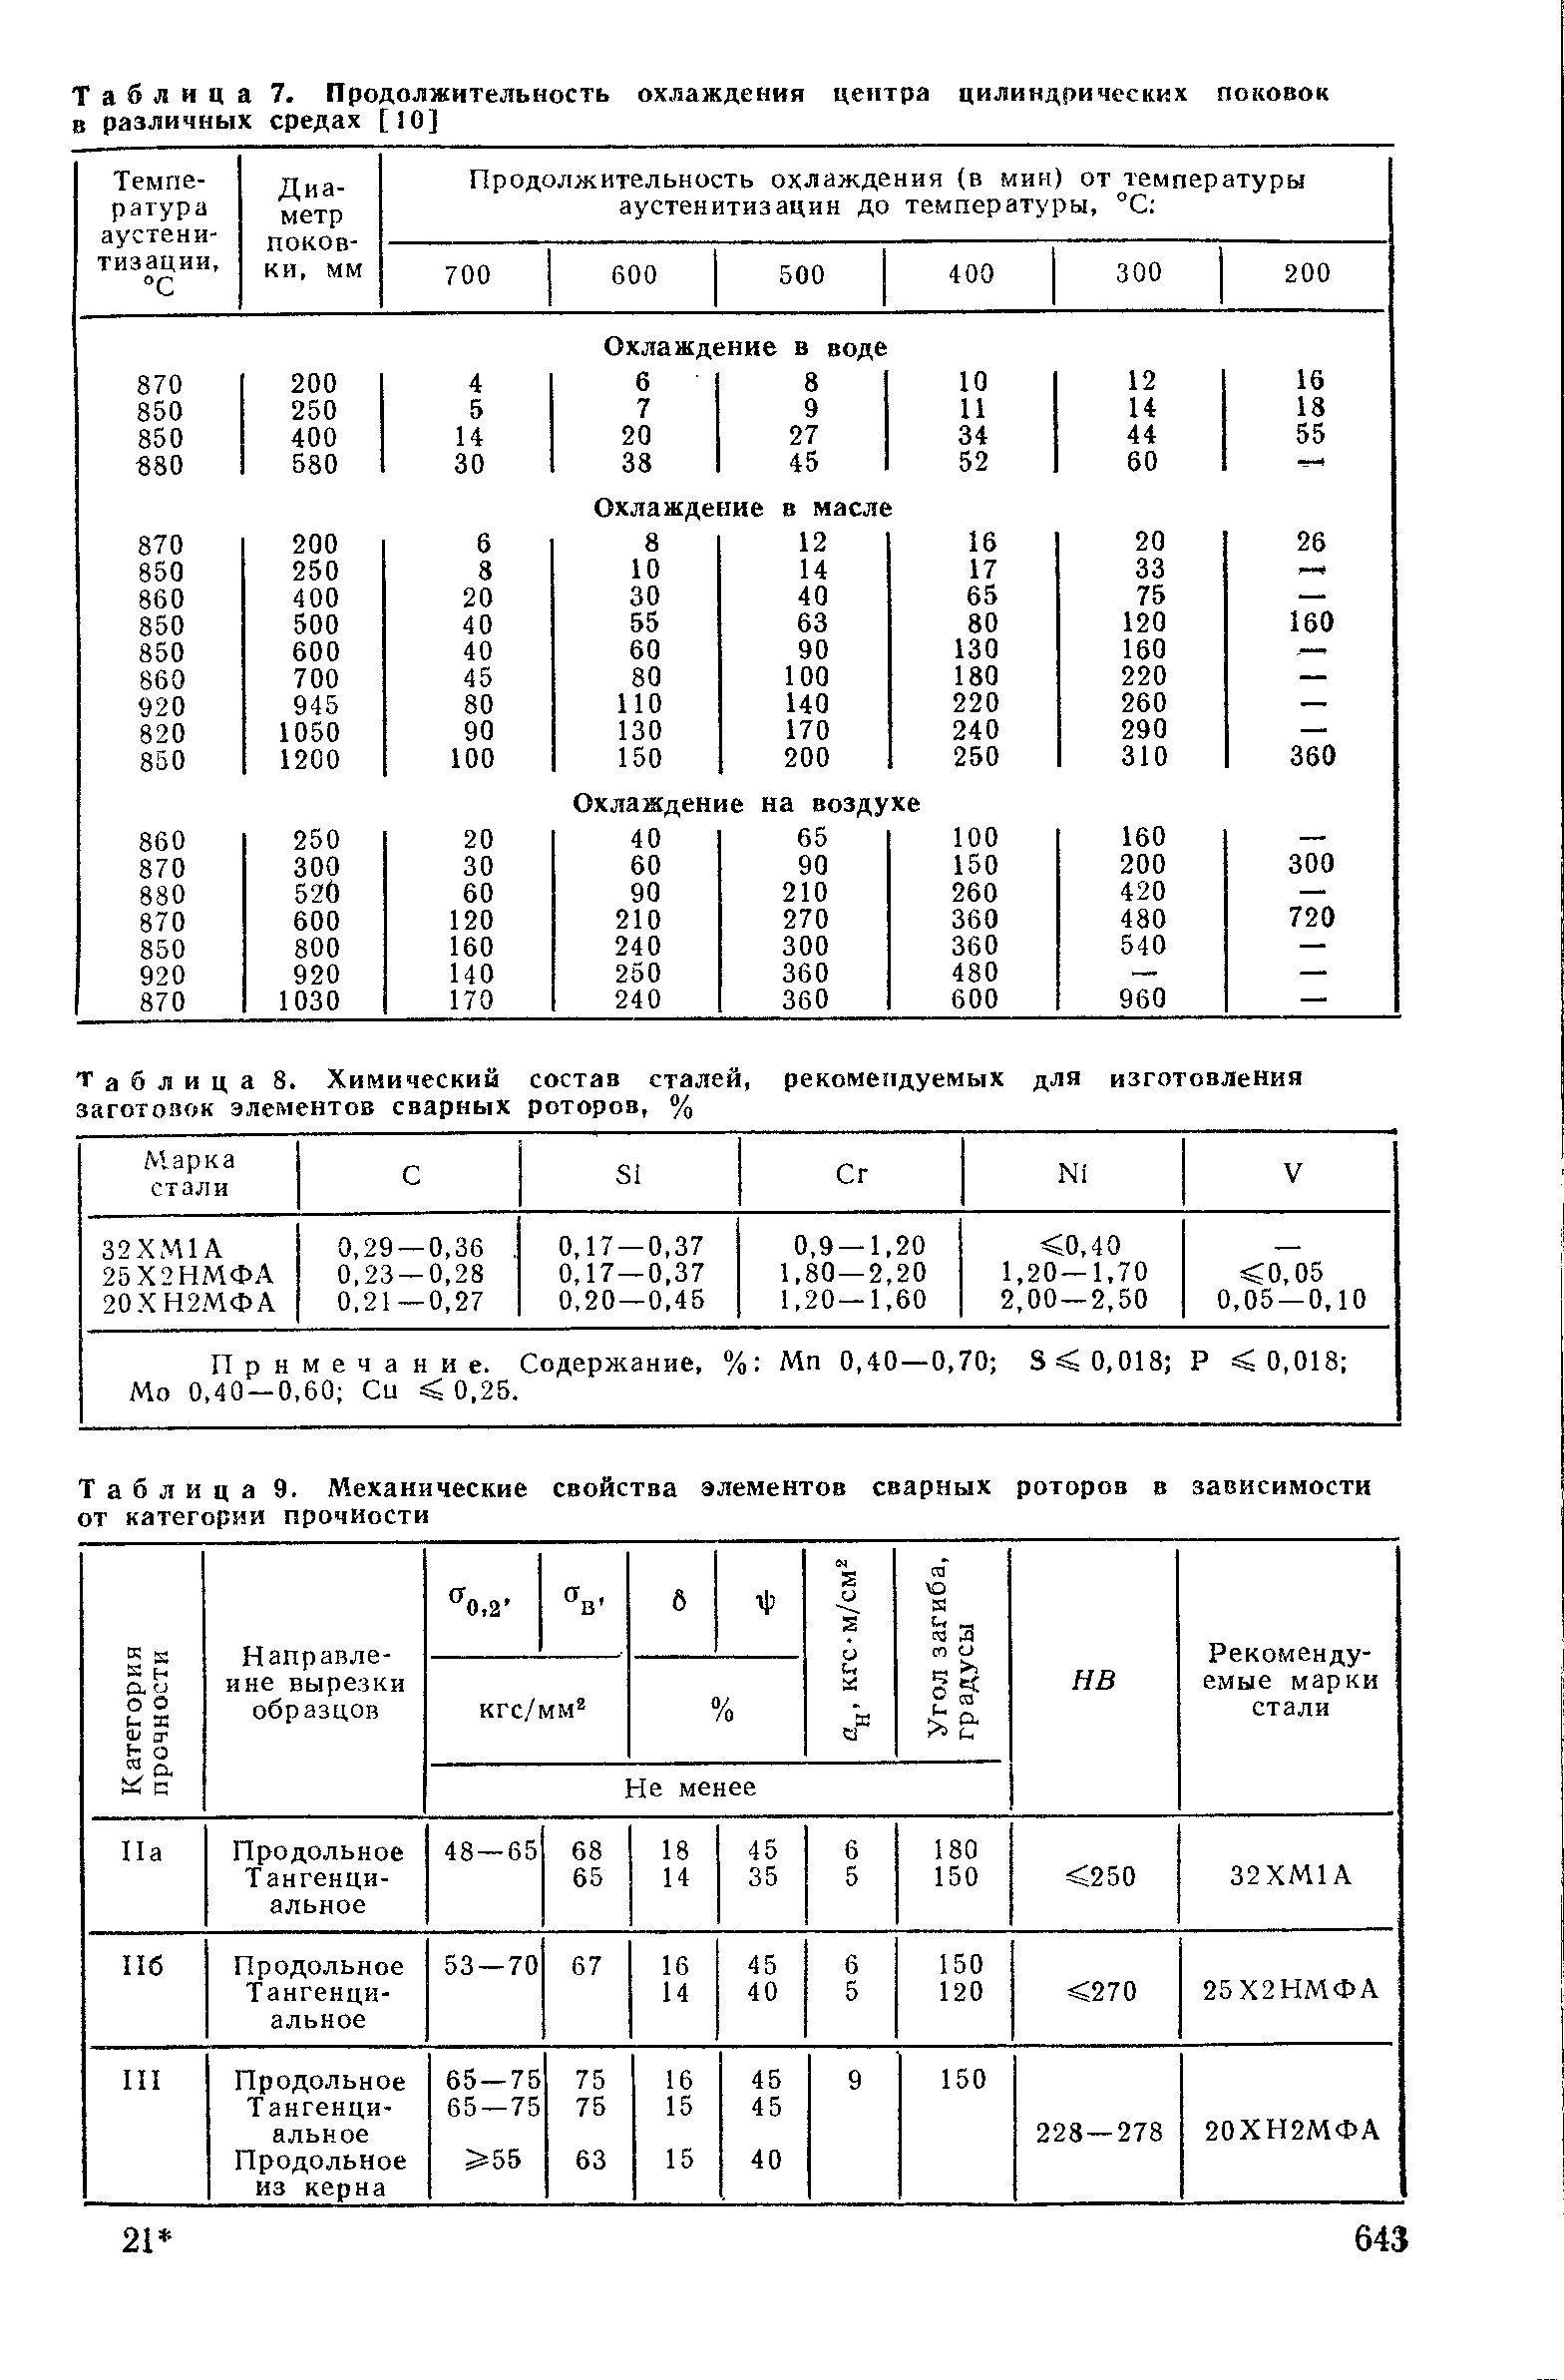 Таблица 9. Механические свойства элементов сварных роторов в зависимости от категории прочности
